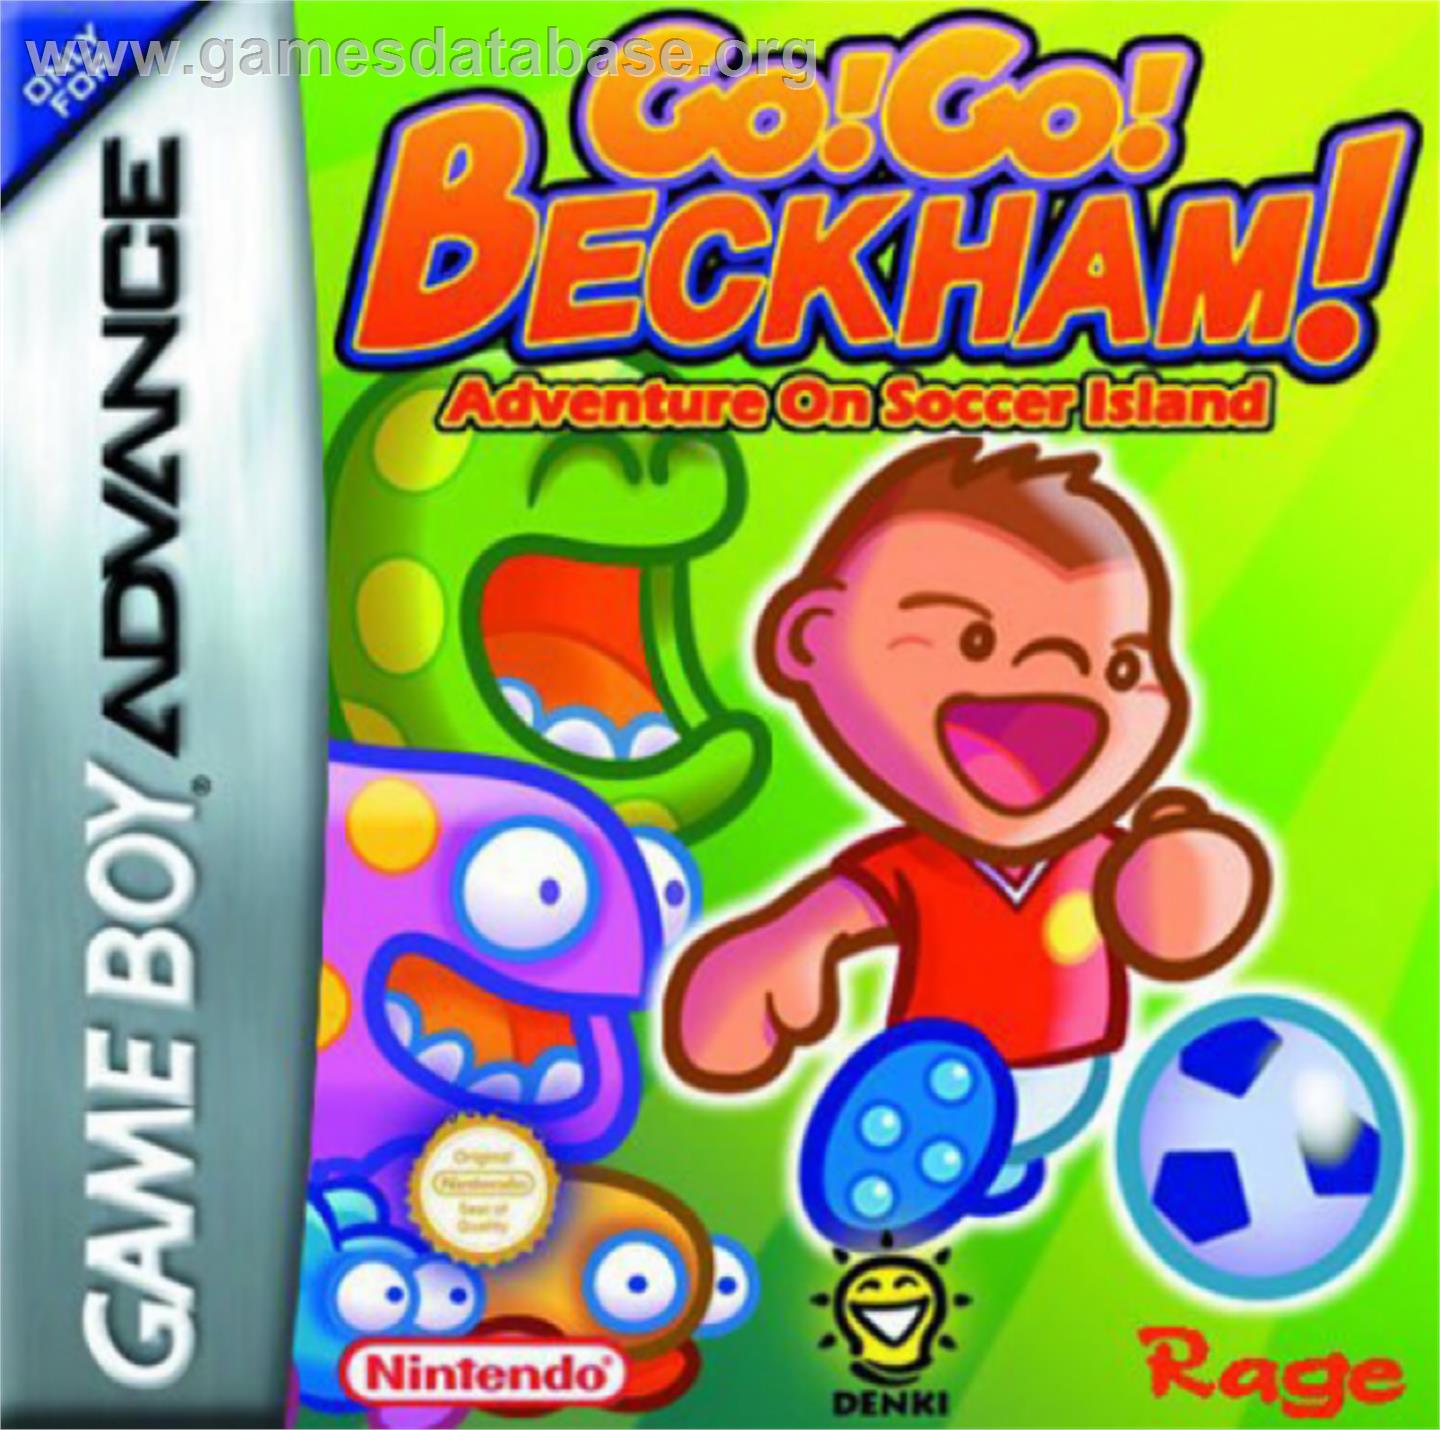 Go! Go! Beckham! Adventure of Soccer Island - Nintendo Game Boy Advance - Artwork - Box